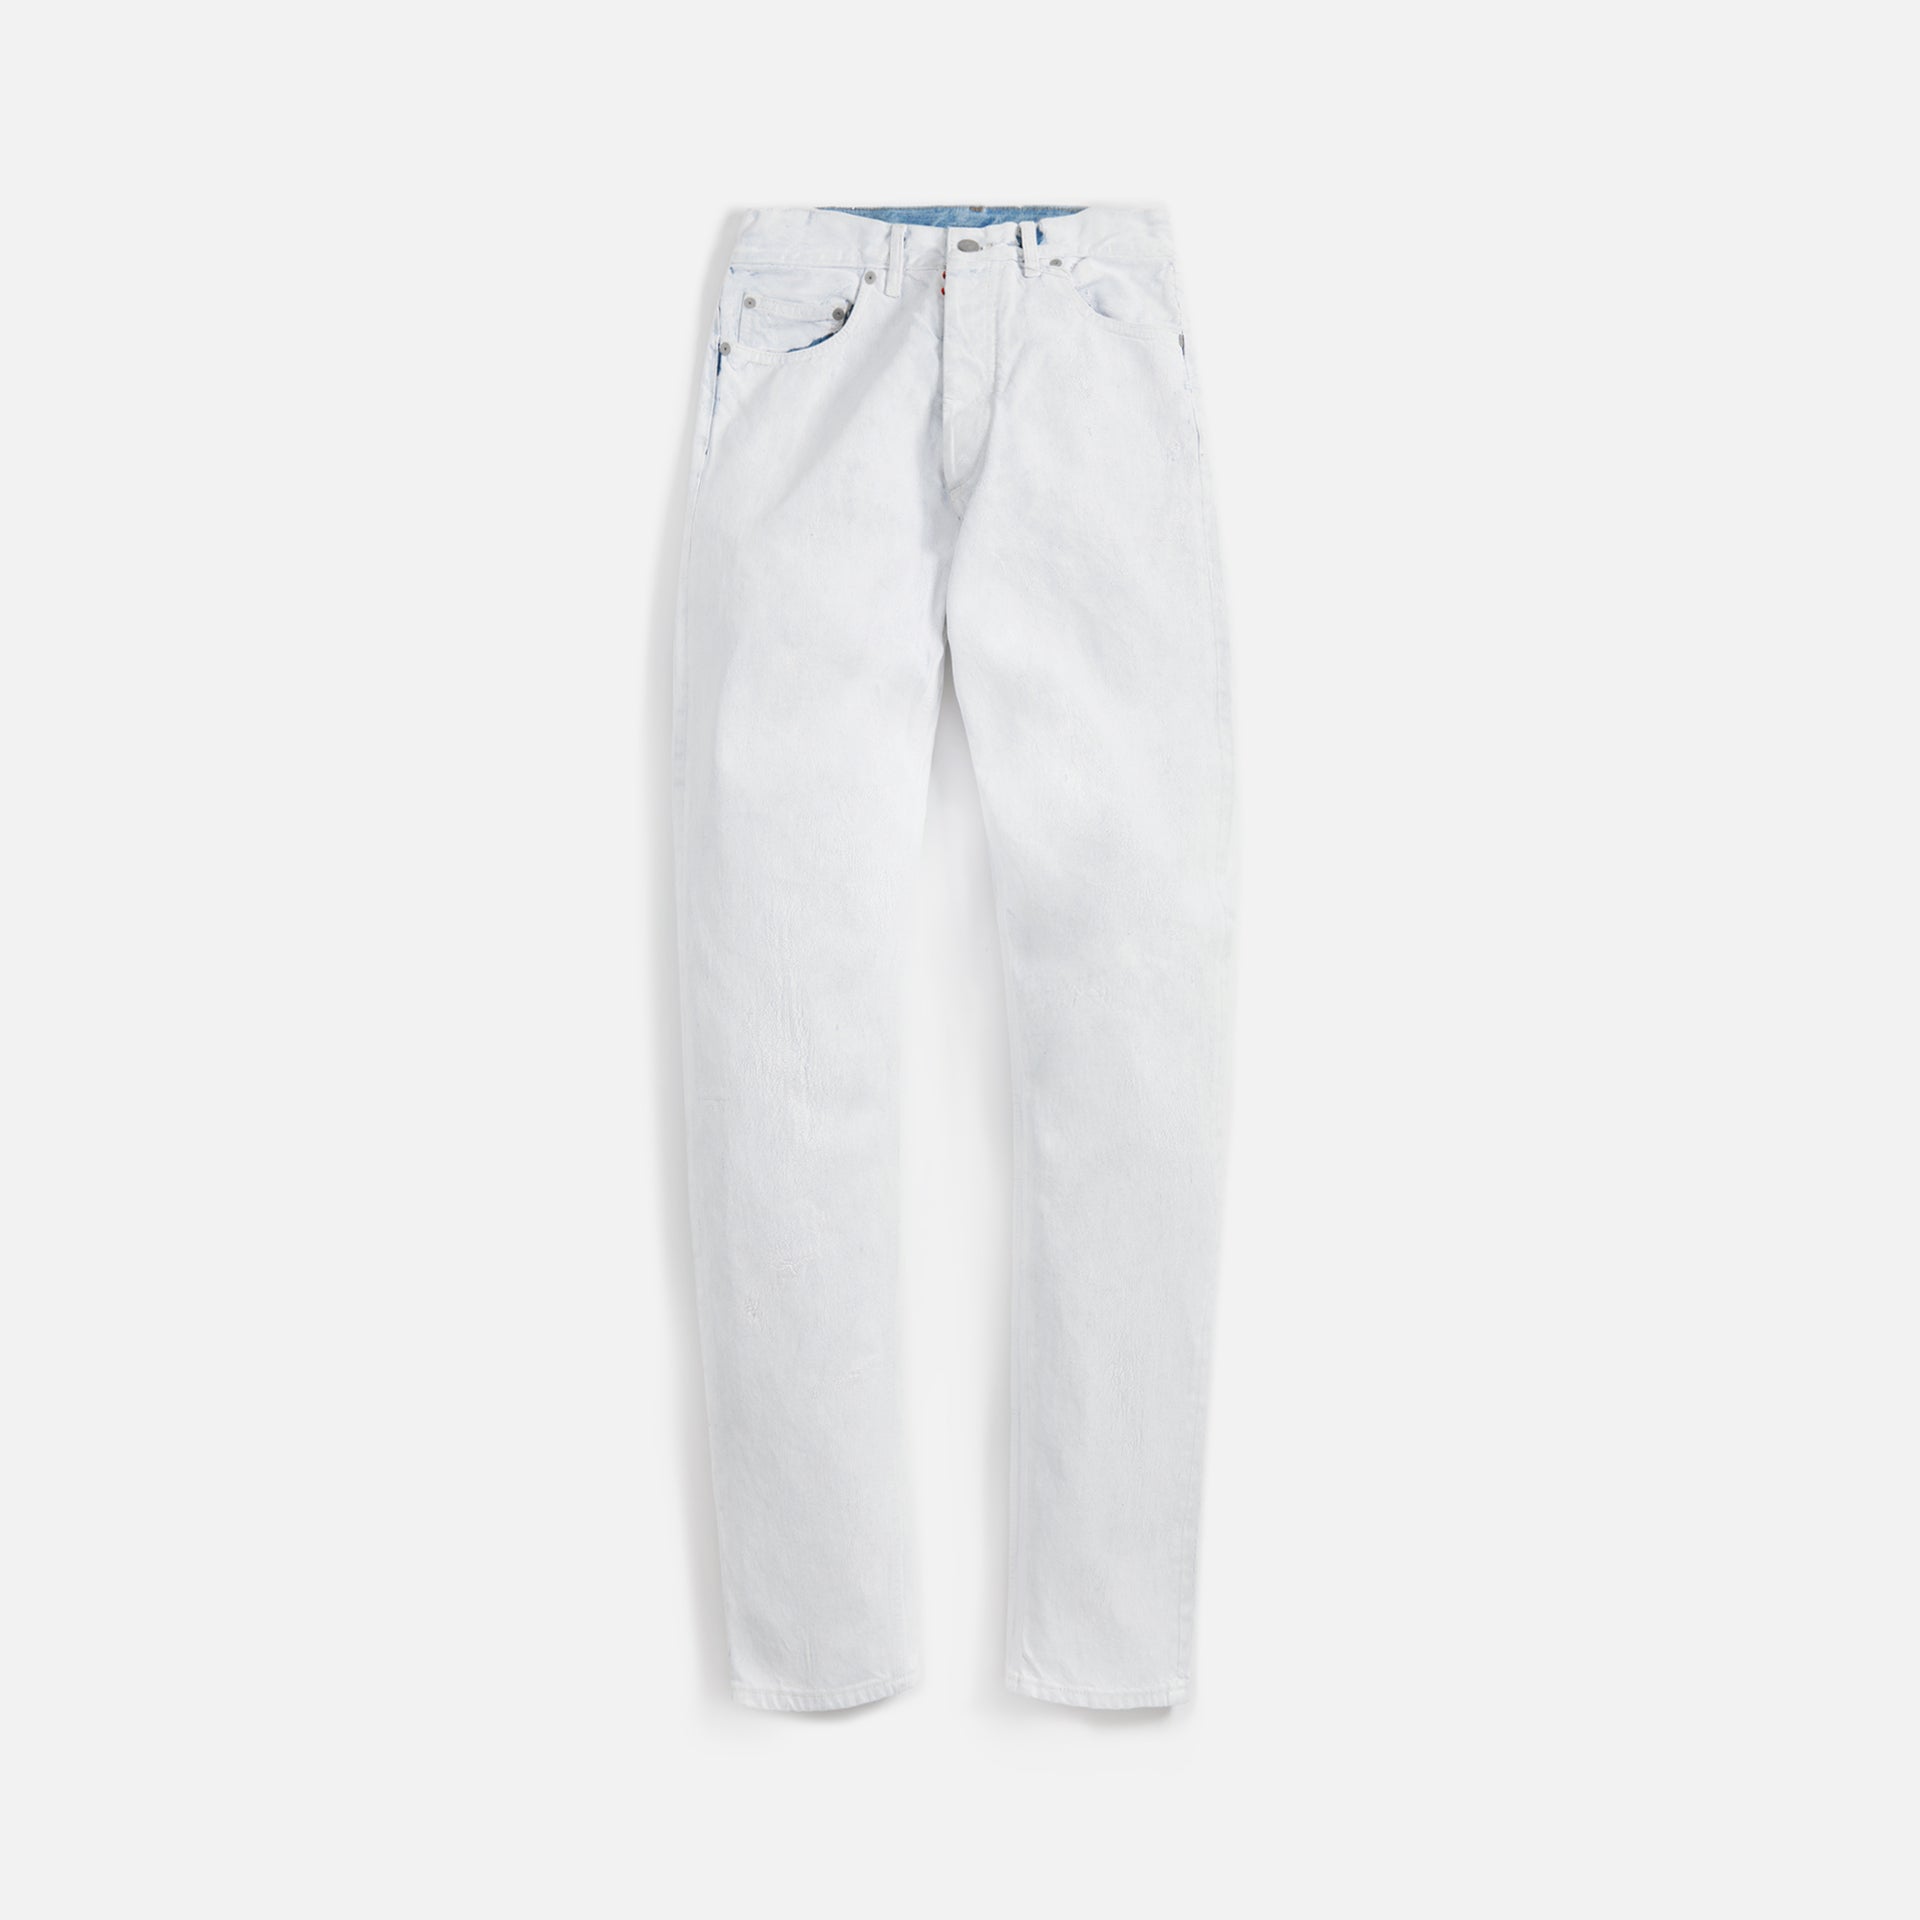 Margiela Denim 5 Pocket Jeans - White Cracked